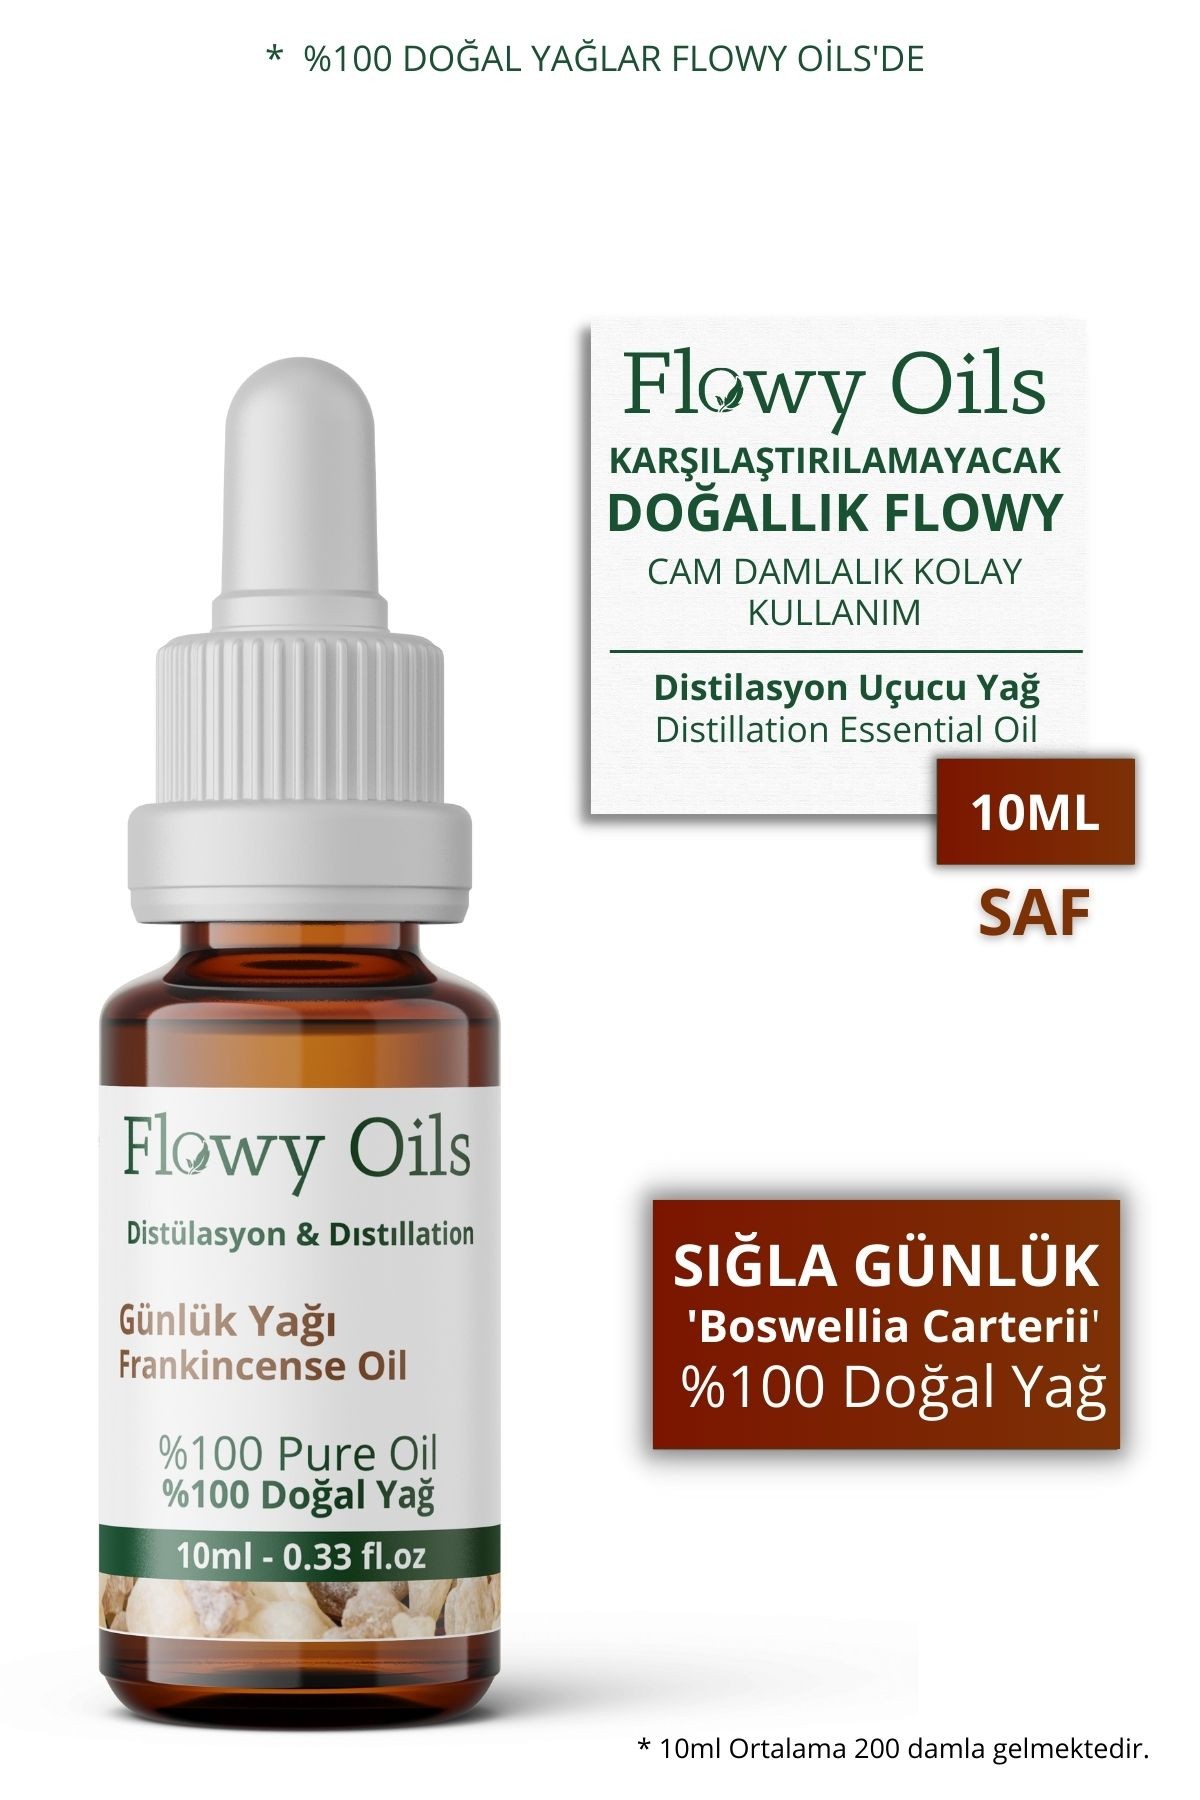 Sığla Günlük Yağı %100 Doğal Bitkisel Uçucu Yağ Akgünlük Yağı Frankincense Oil 10ML